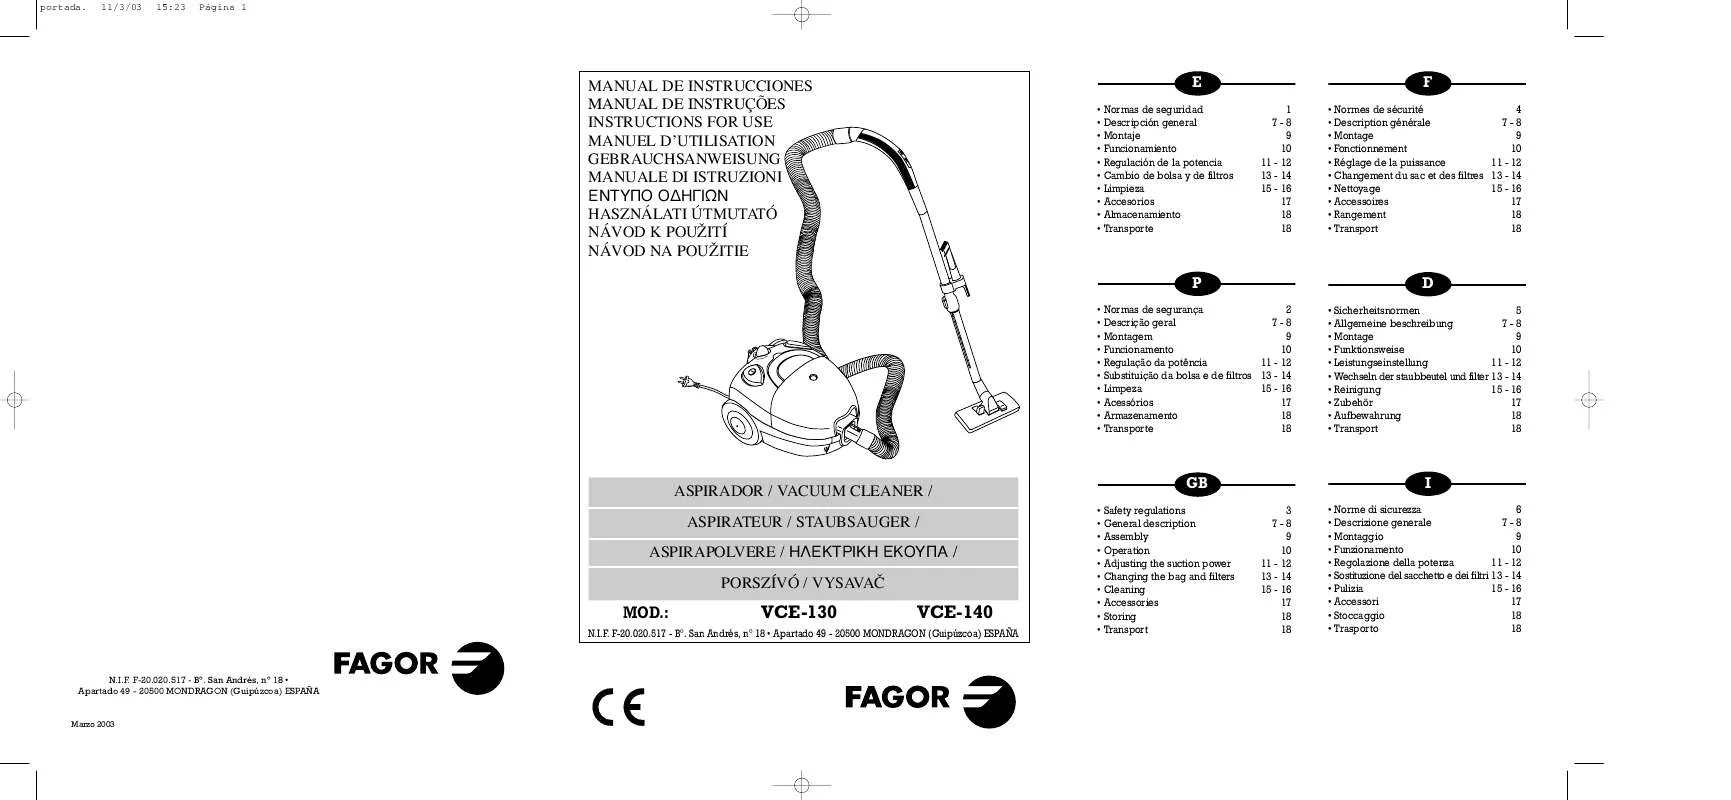 Mode d'emploi FAGOR VCE-130-140